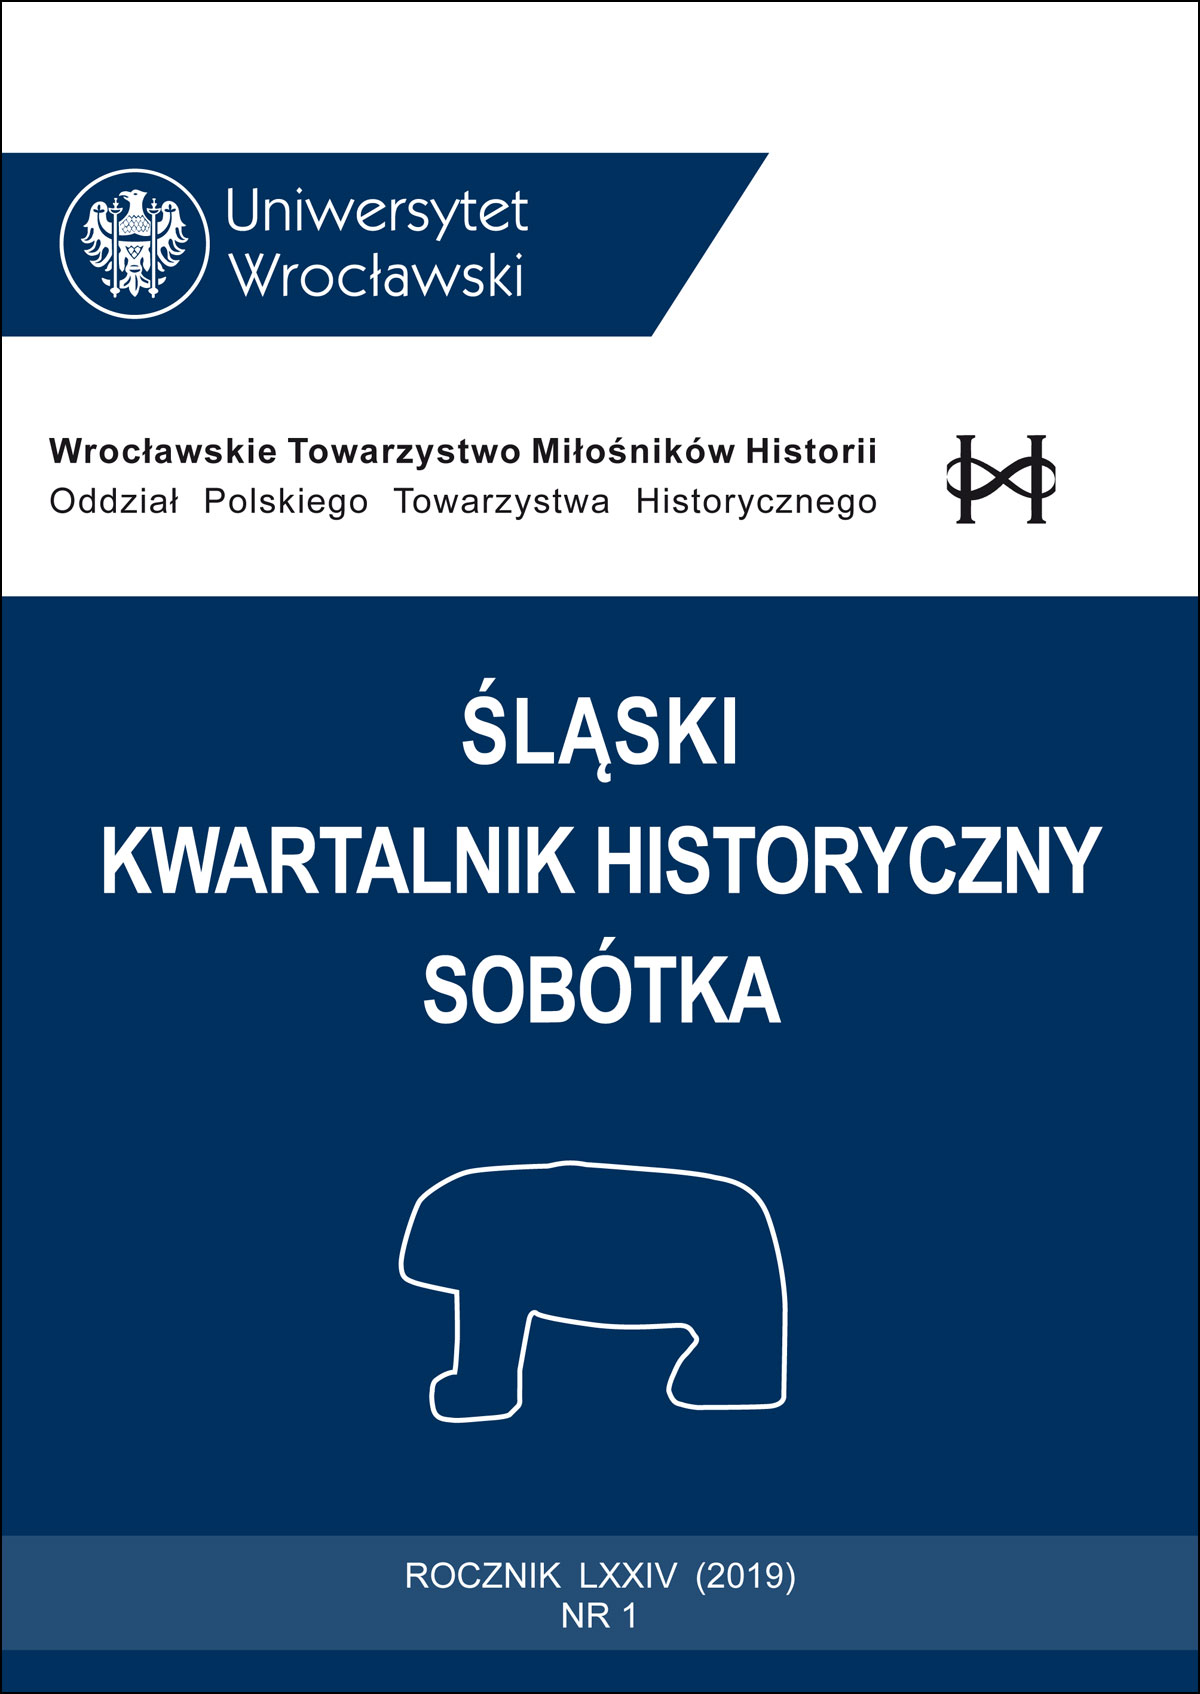 Sprawozdanie z VI Kongresu Mediewistów Polskich Media aetas – historia viva / Średniowiecze – historia żywa (Wrocław, 20–22 IX 2018 r.)